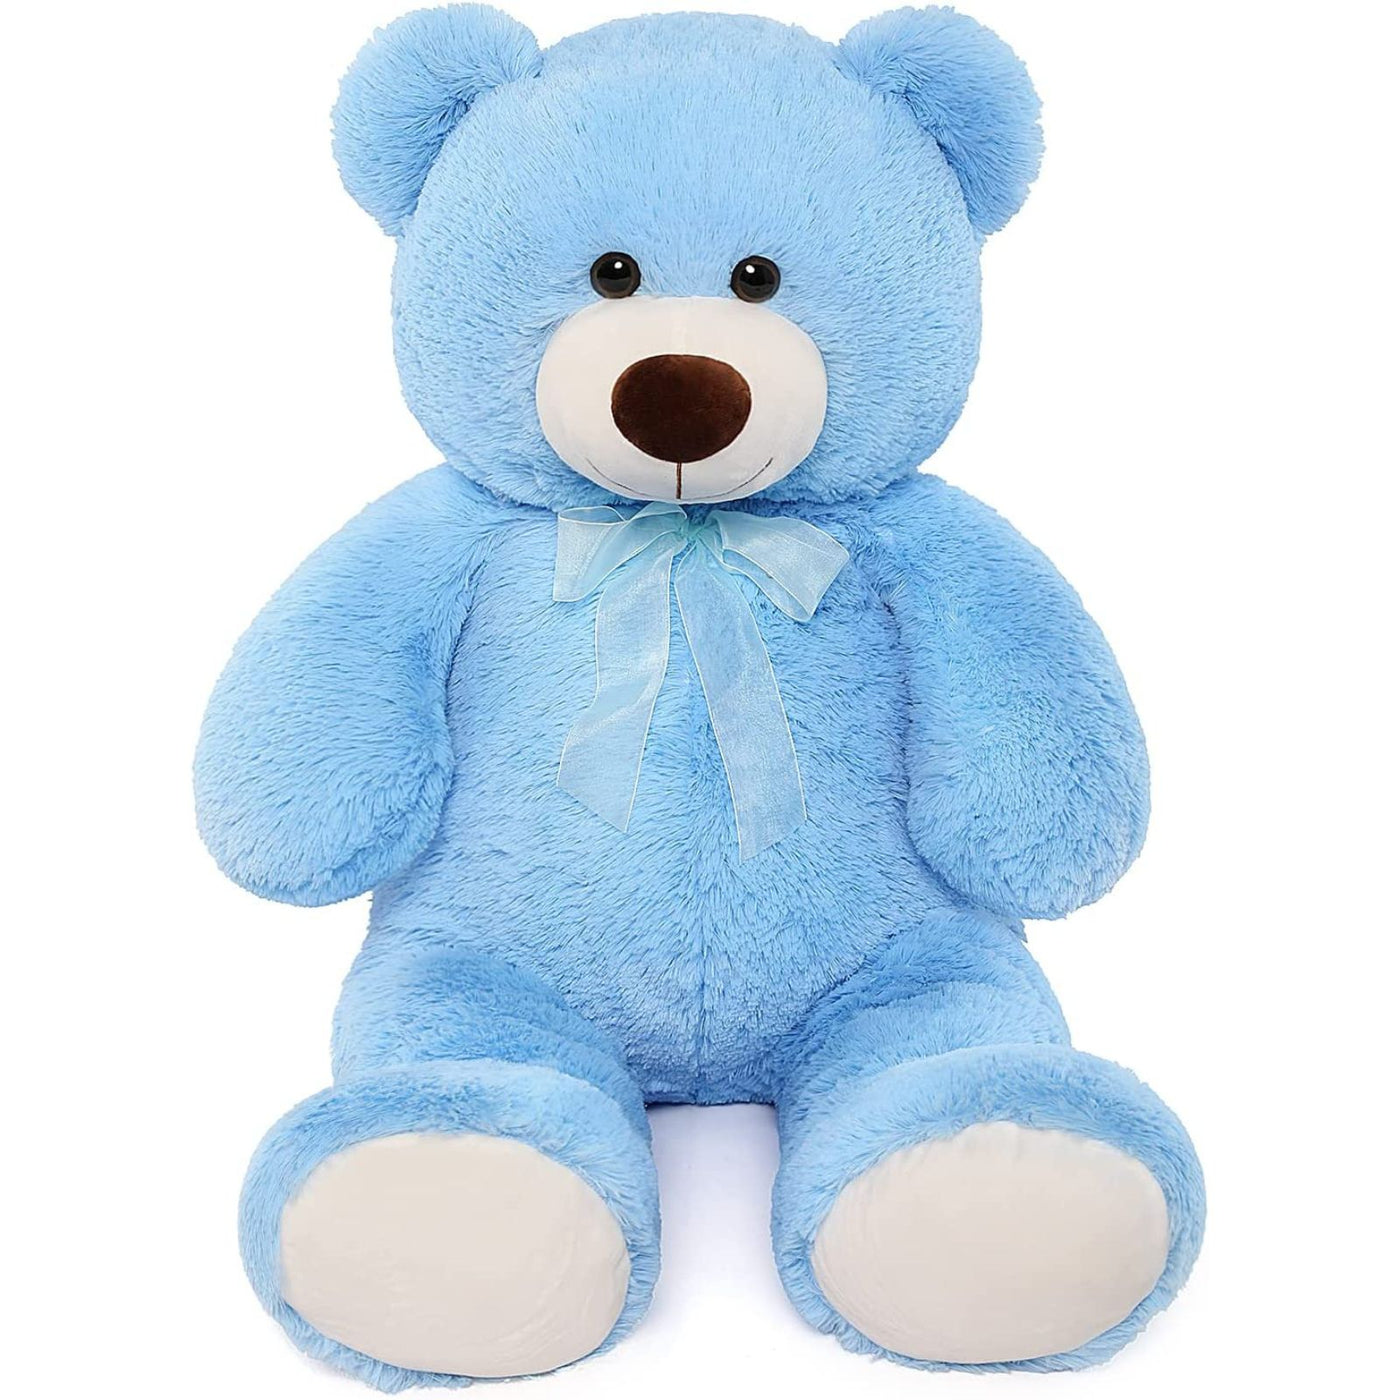 Giant Teddy Bear Plush Toy, Blue, 35.4/51 Inches - MorisMos Plush Toys